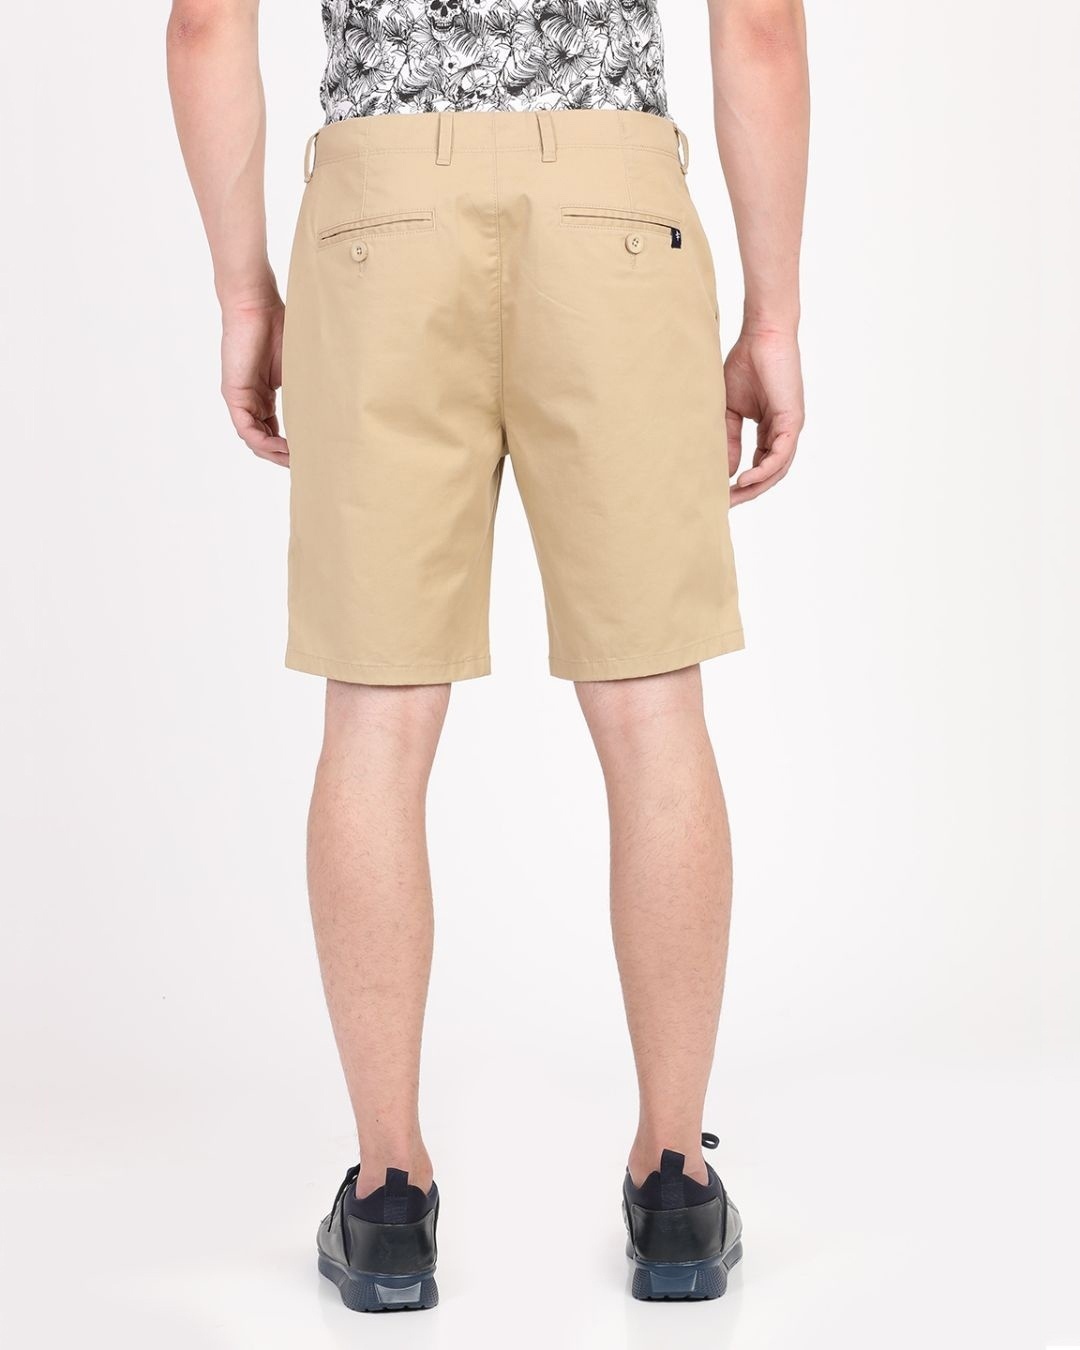 Buy Men's Beige Slim Fit Cotton Shorts for Men Beige Online at Bewakoof